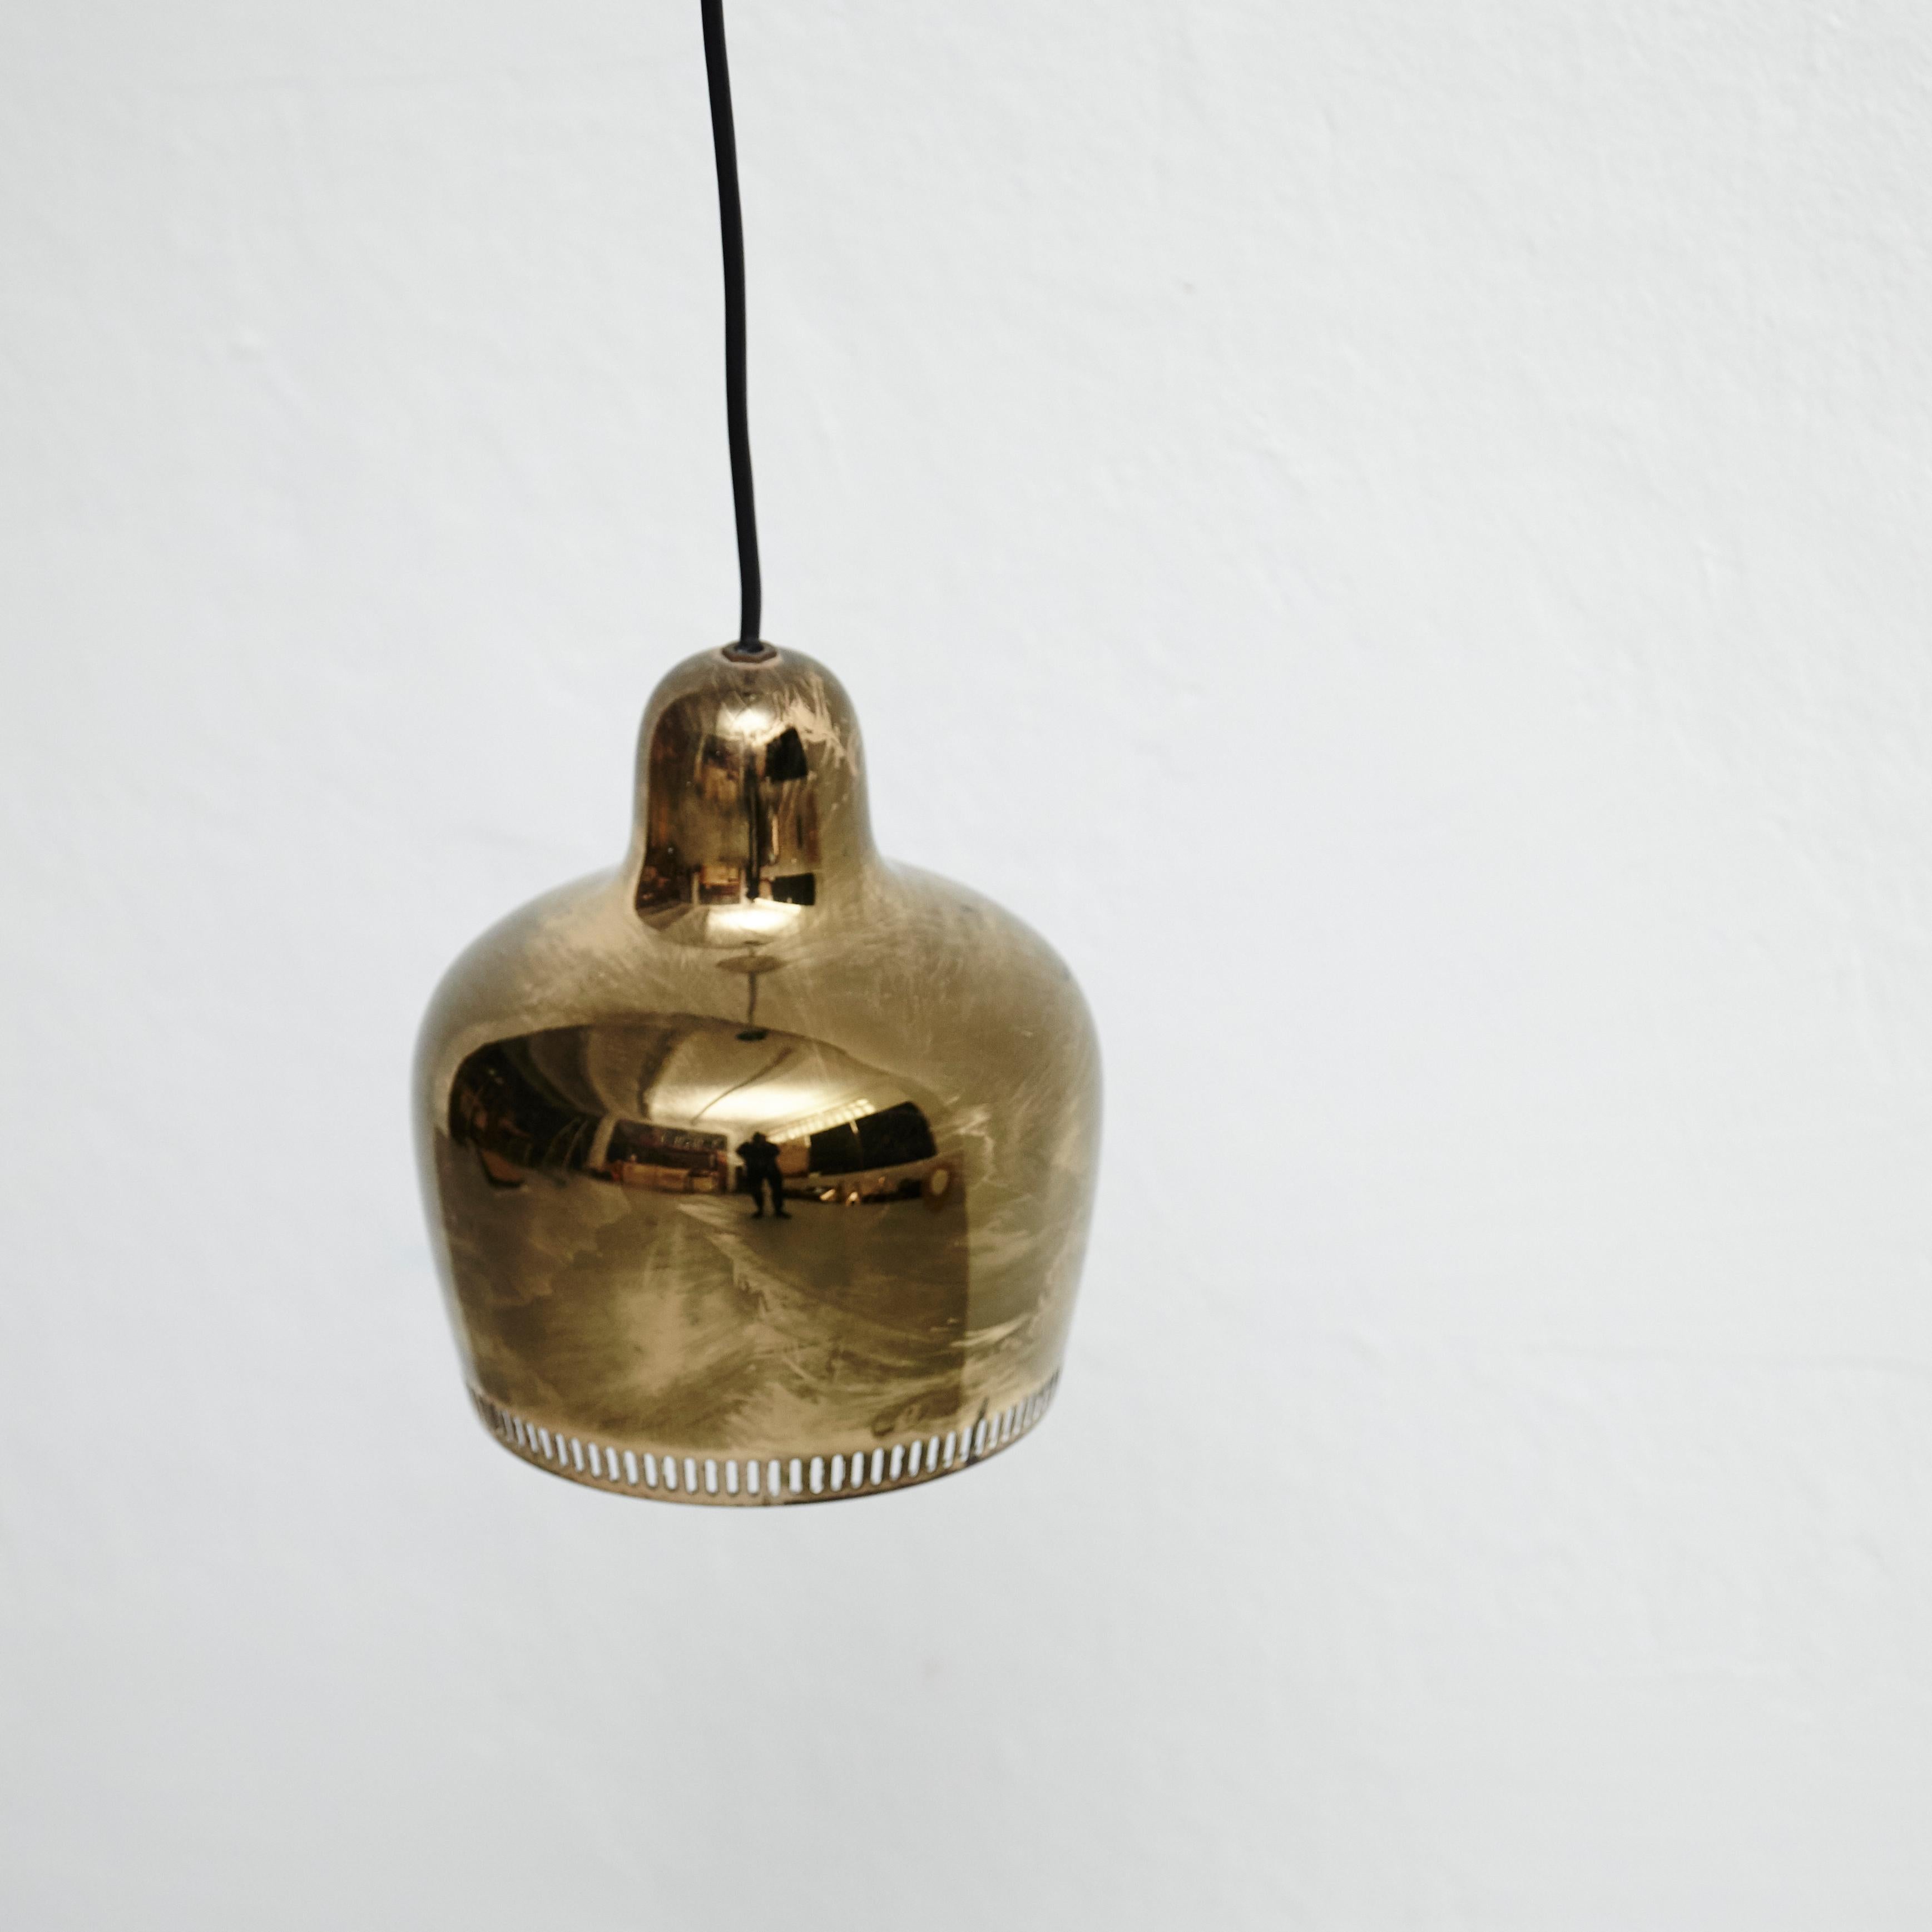 Finnish Alvar Aalto Golden Bell Pendant Lamp, circa 1950